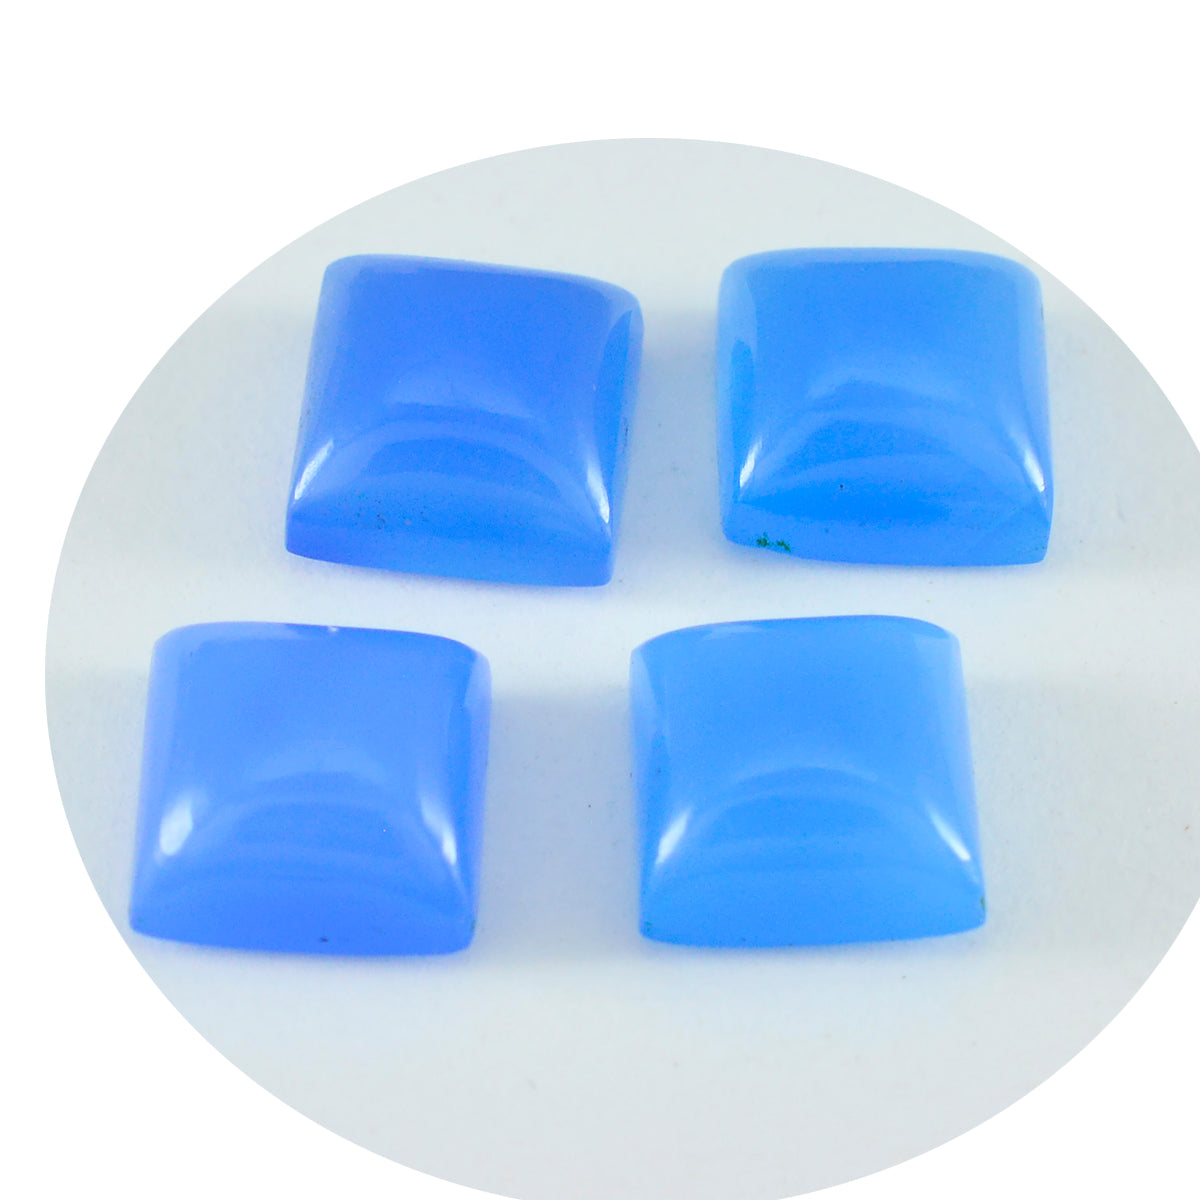 Riyogems – cabochon en calcédoine bleue, forme carrée, belle qualité, pierres précieuses en vrac, 11x11mm, 1 pièce